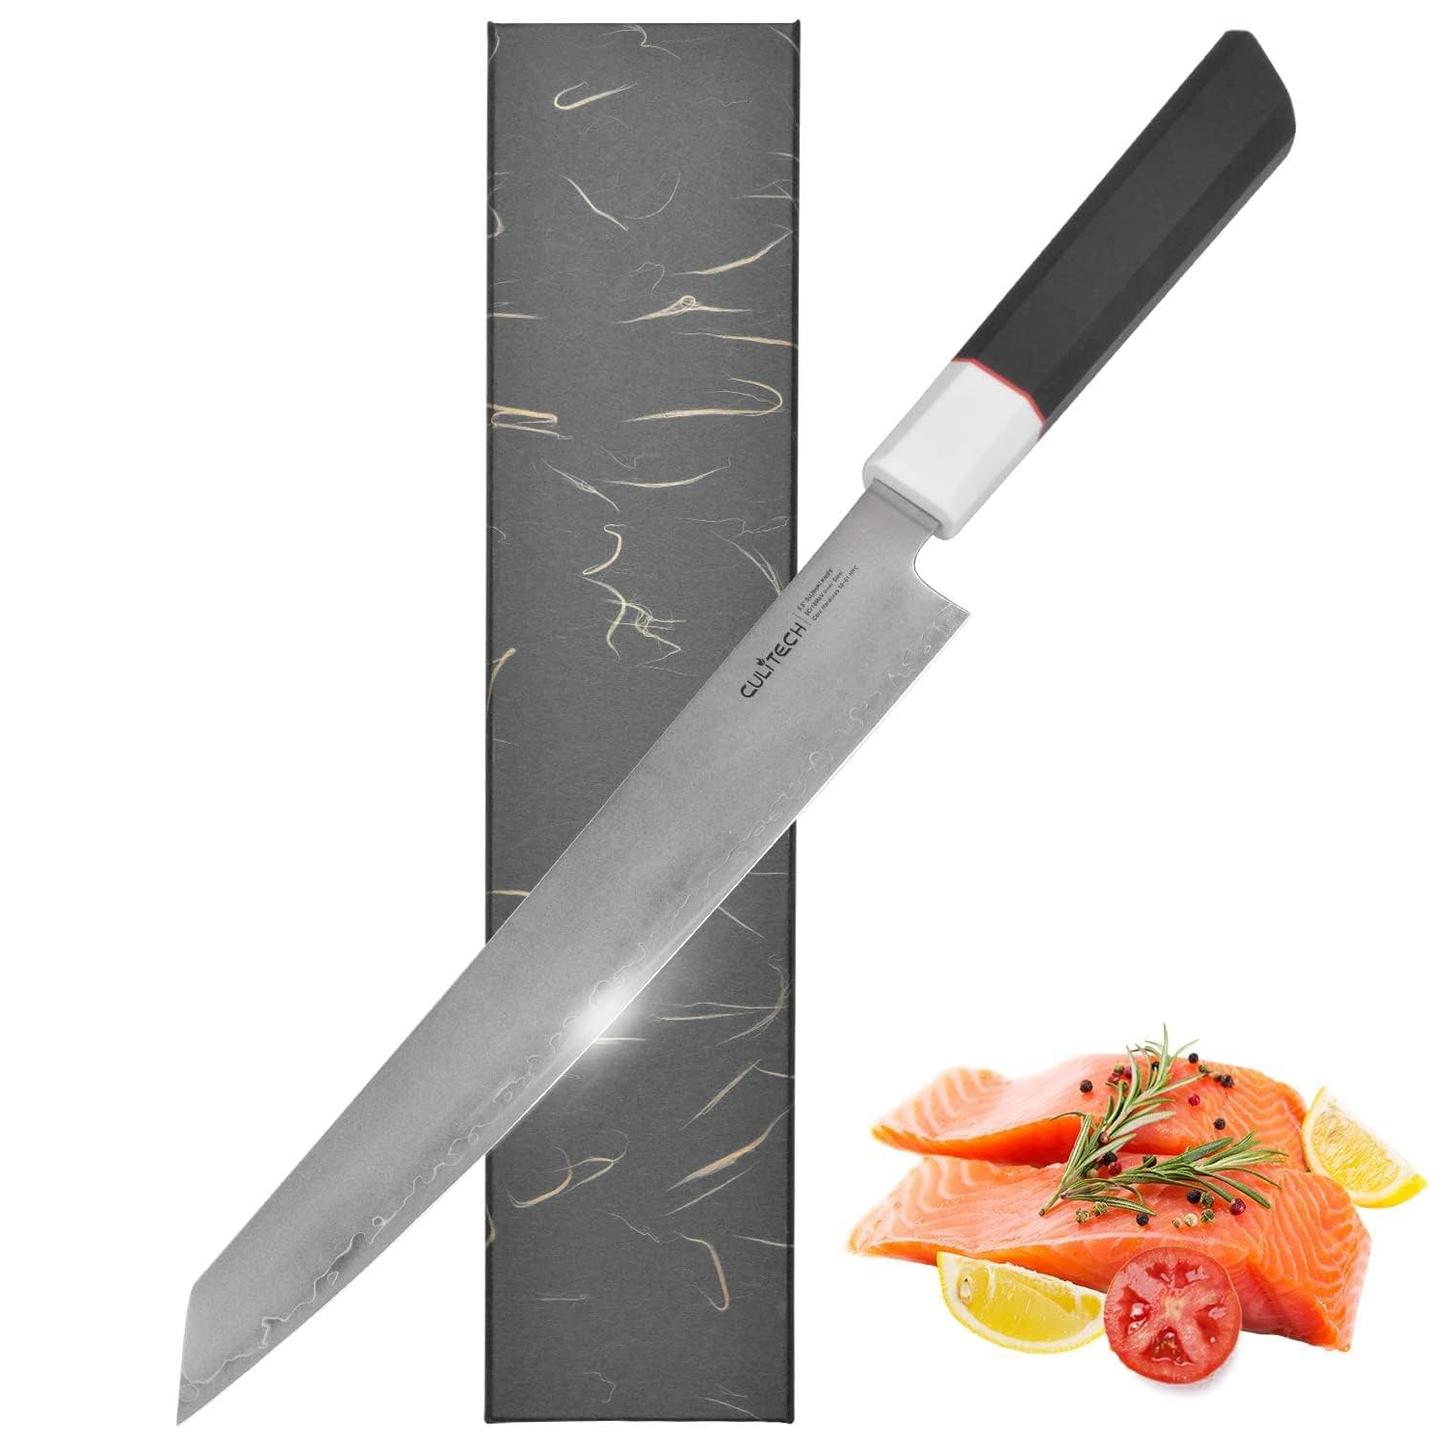 KD Sujihiki Knife 9.5 SashimiSushi Knife with G10 Octagonal Handle